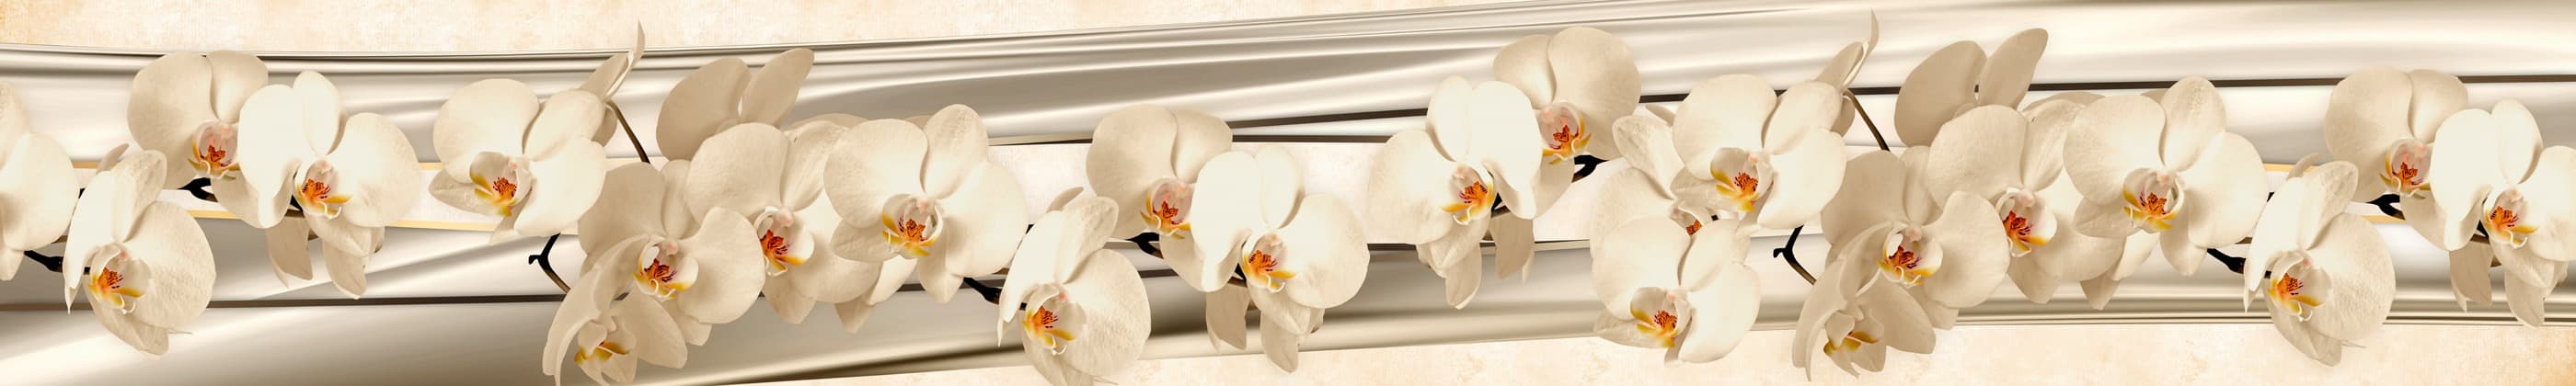 Фартук для кухни цветы орхидеи